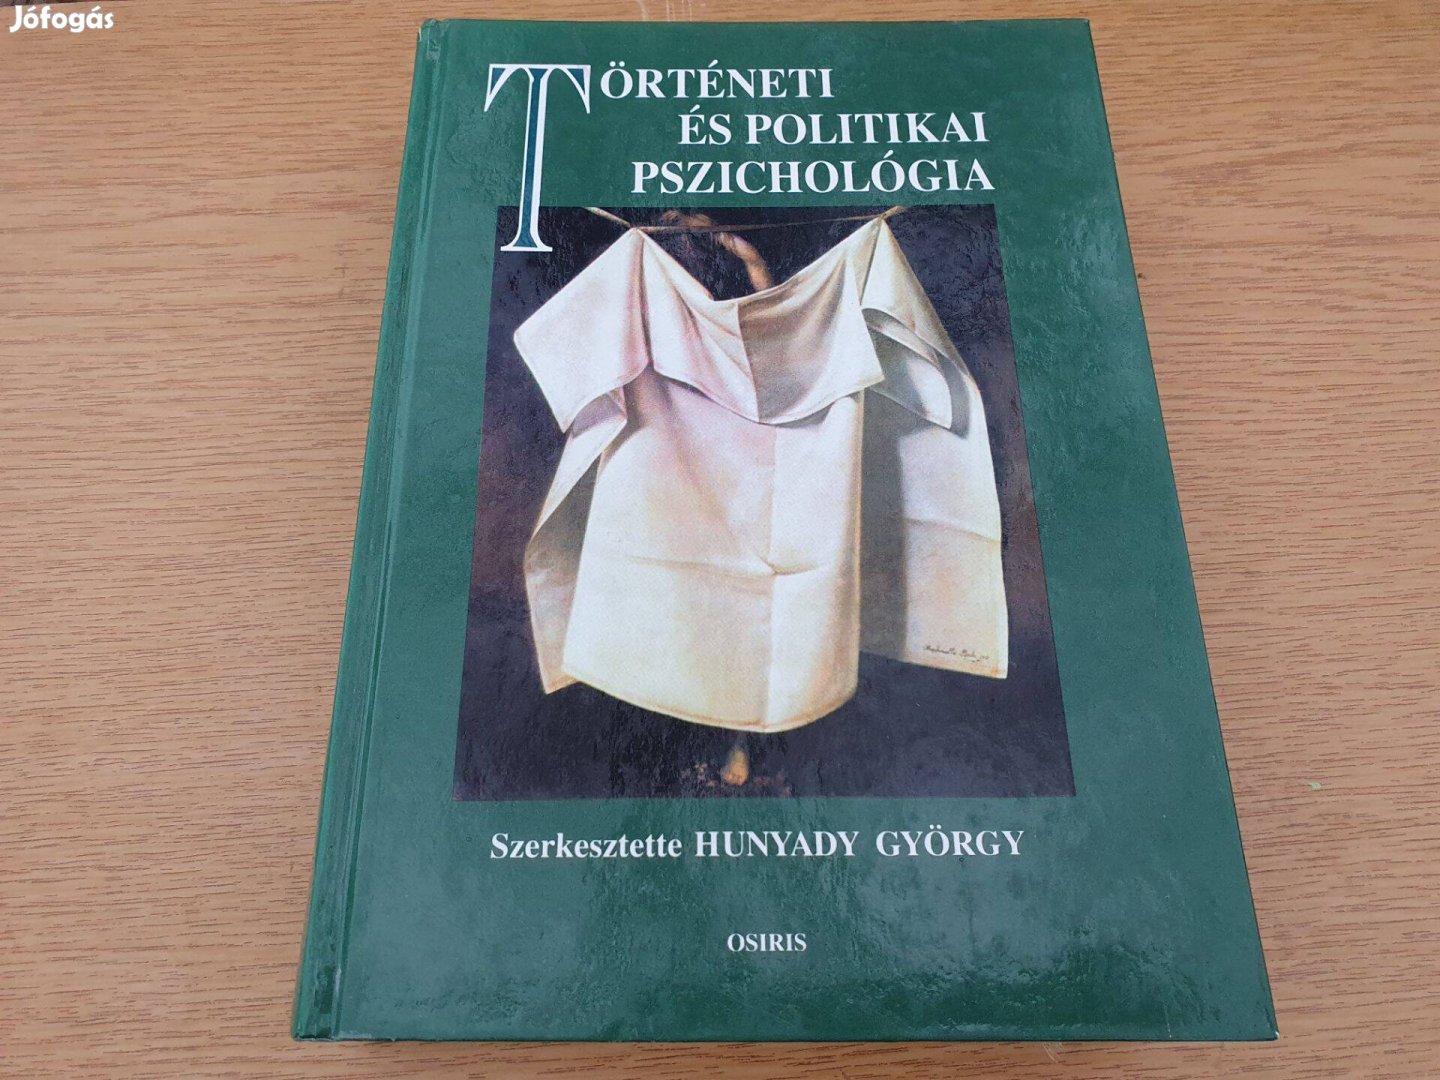 Hunyady György (szerk.): Történeti és politikai pszichológia